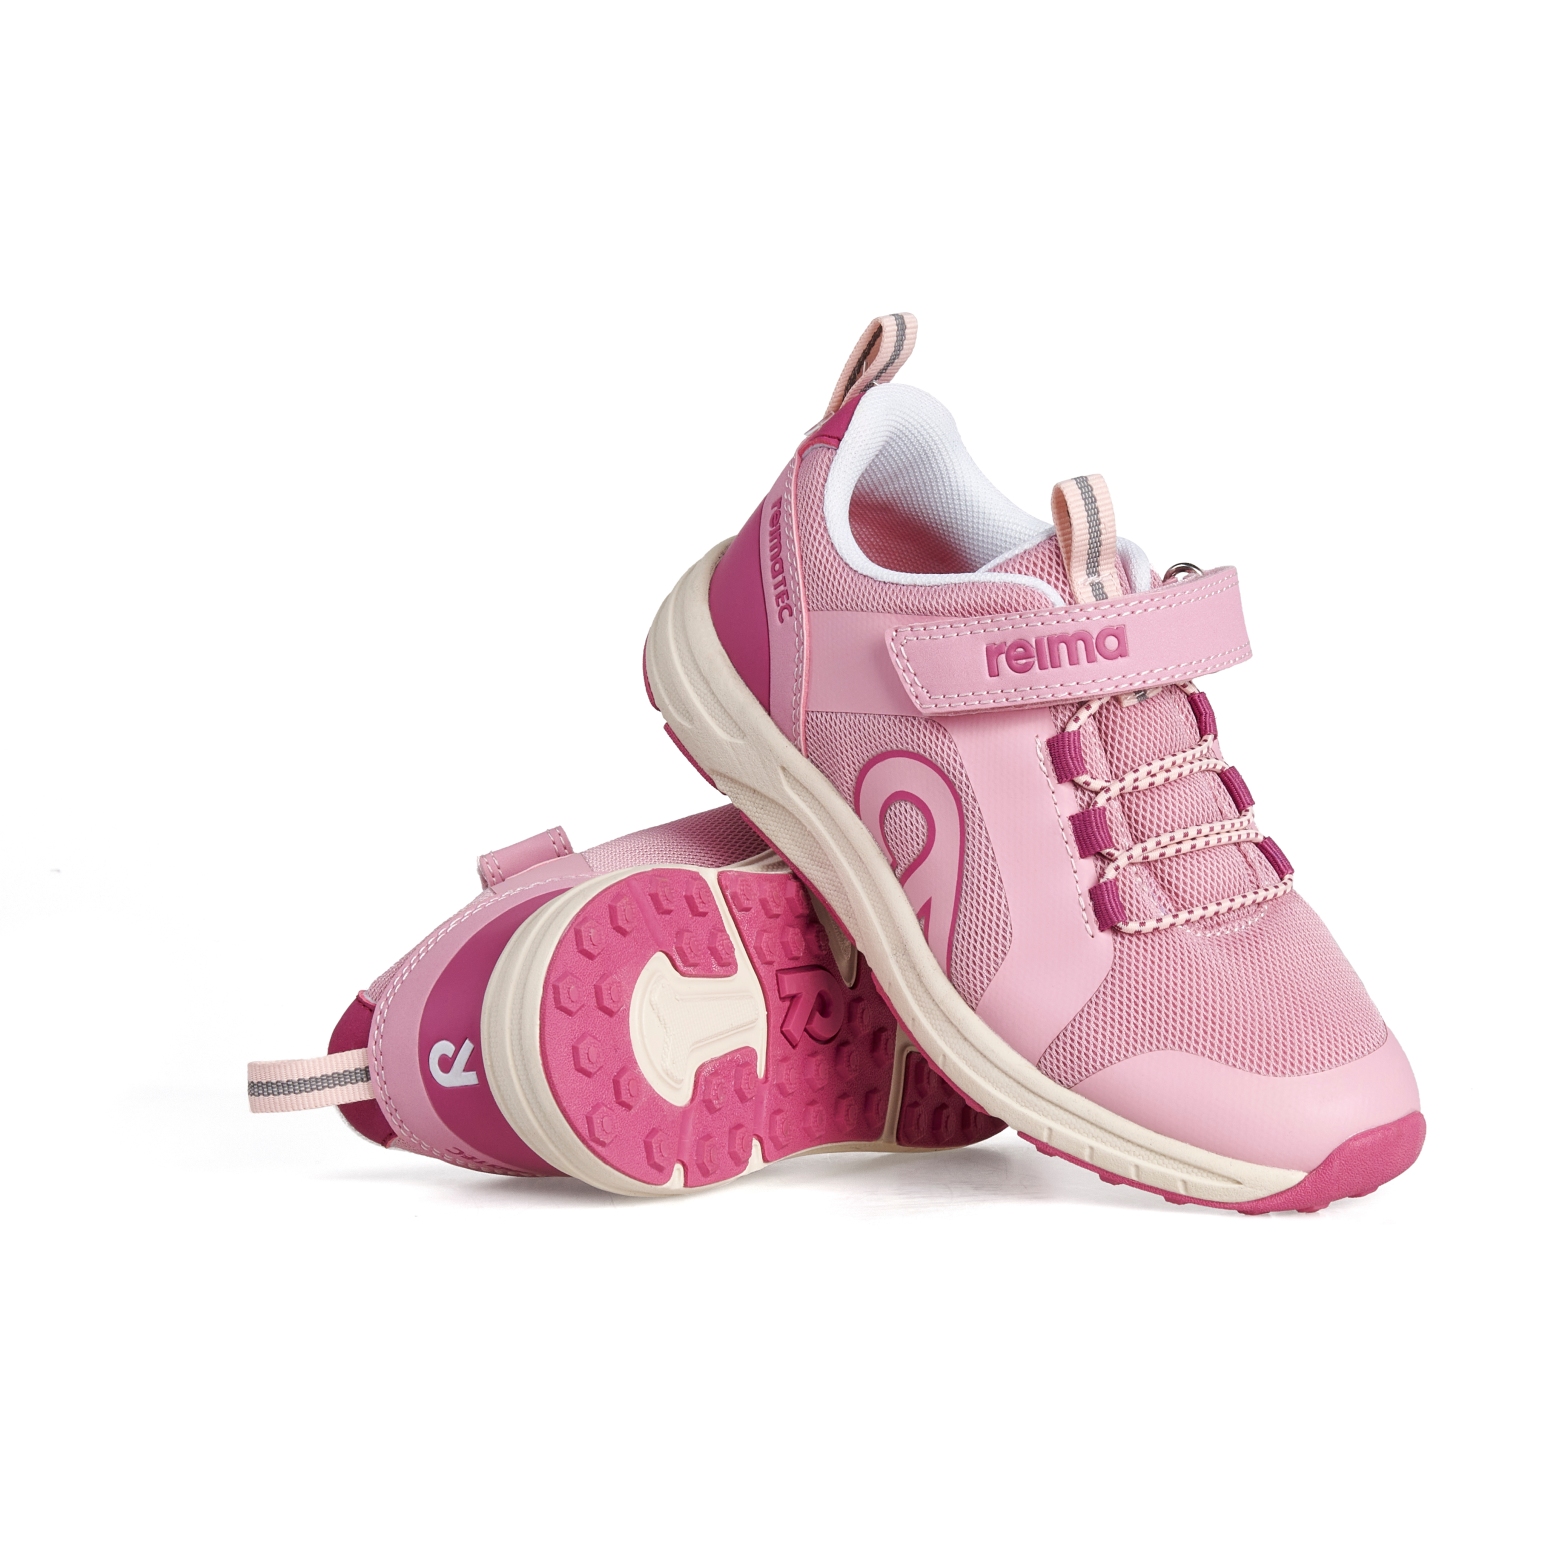 Produktbild von Reima Enkka Sneaker Kinder - grey pink 4500